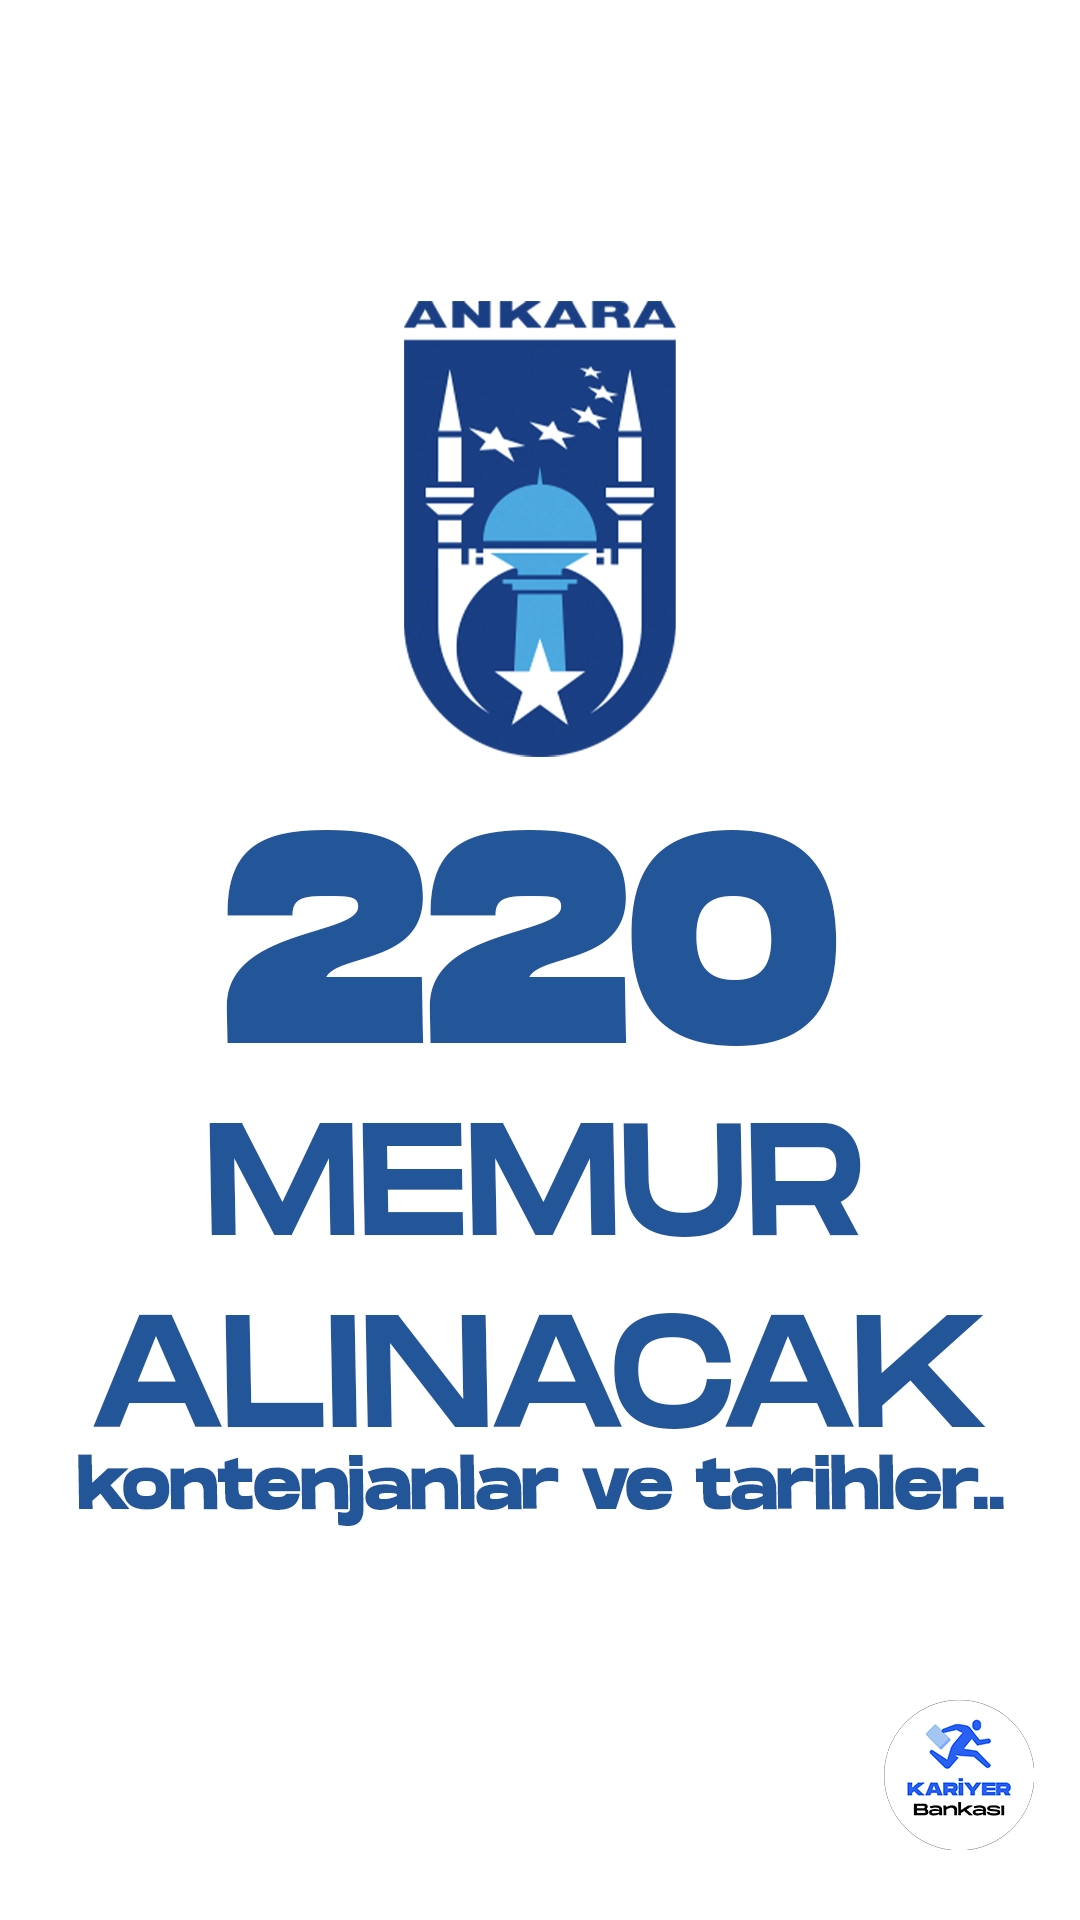 Ankara Büyükşehir Belediyesi'ne 220 memur alımı yapılacak. 100 itfaiye eri, 120 zabıta memuru alımı için KPSS şartı, mezuniyet, yaş ve diğer şartlar belli oldu. ABB memur alımına dair detaylar bu haberimizde...